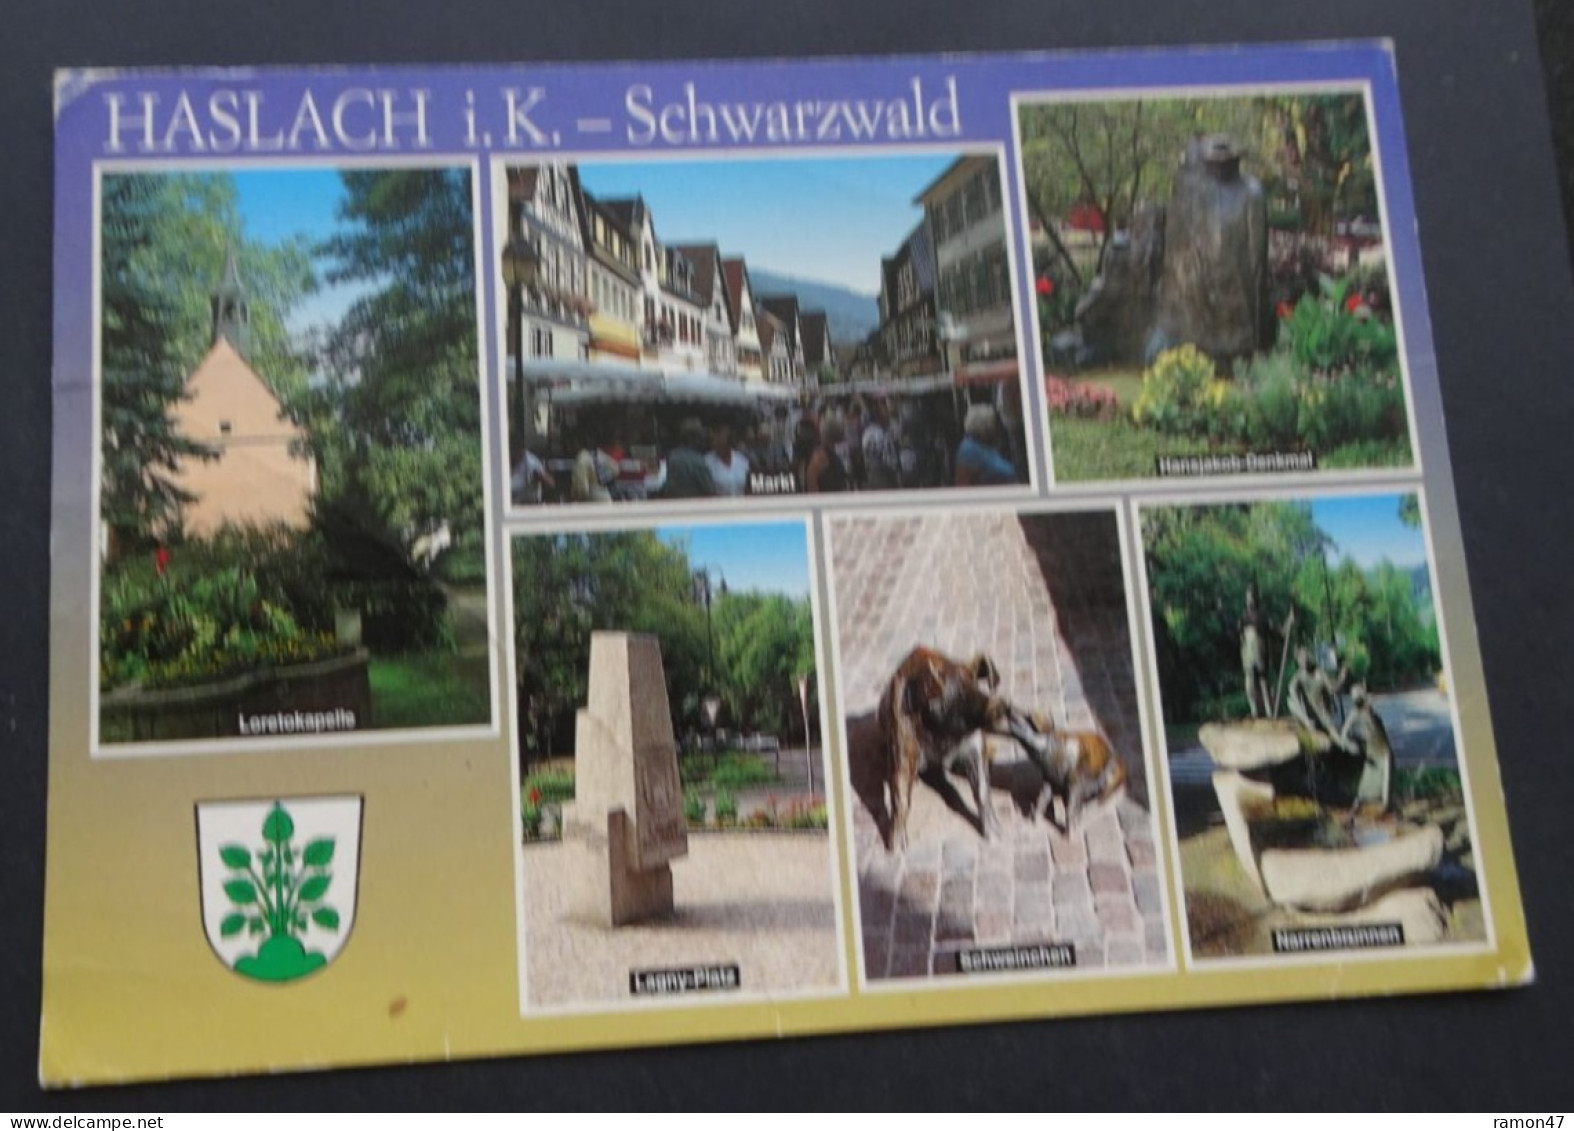 Haslach I.K. - Schwarzwald - Cramers Kunstanstalt Dortmund - Haslach